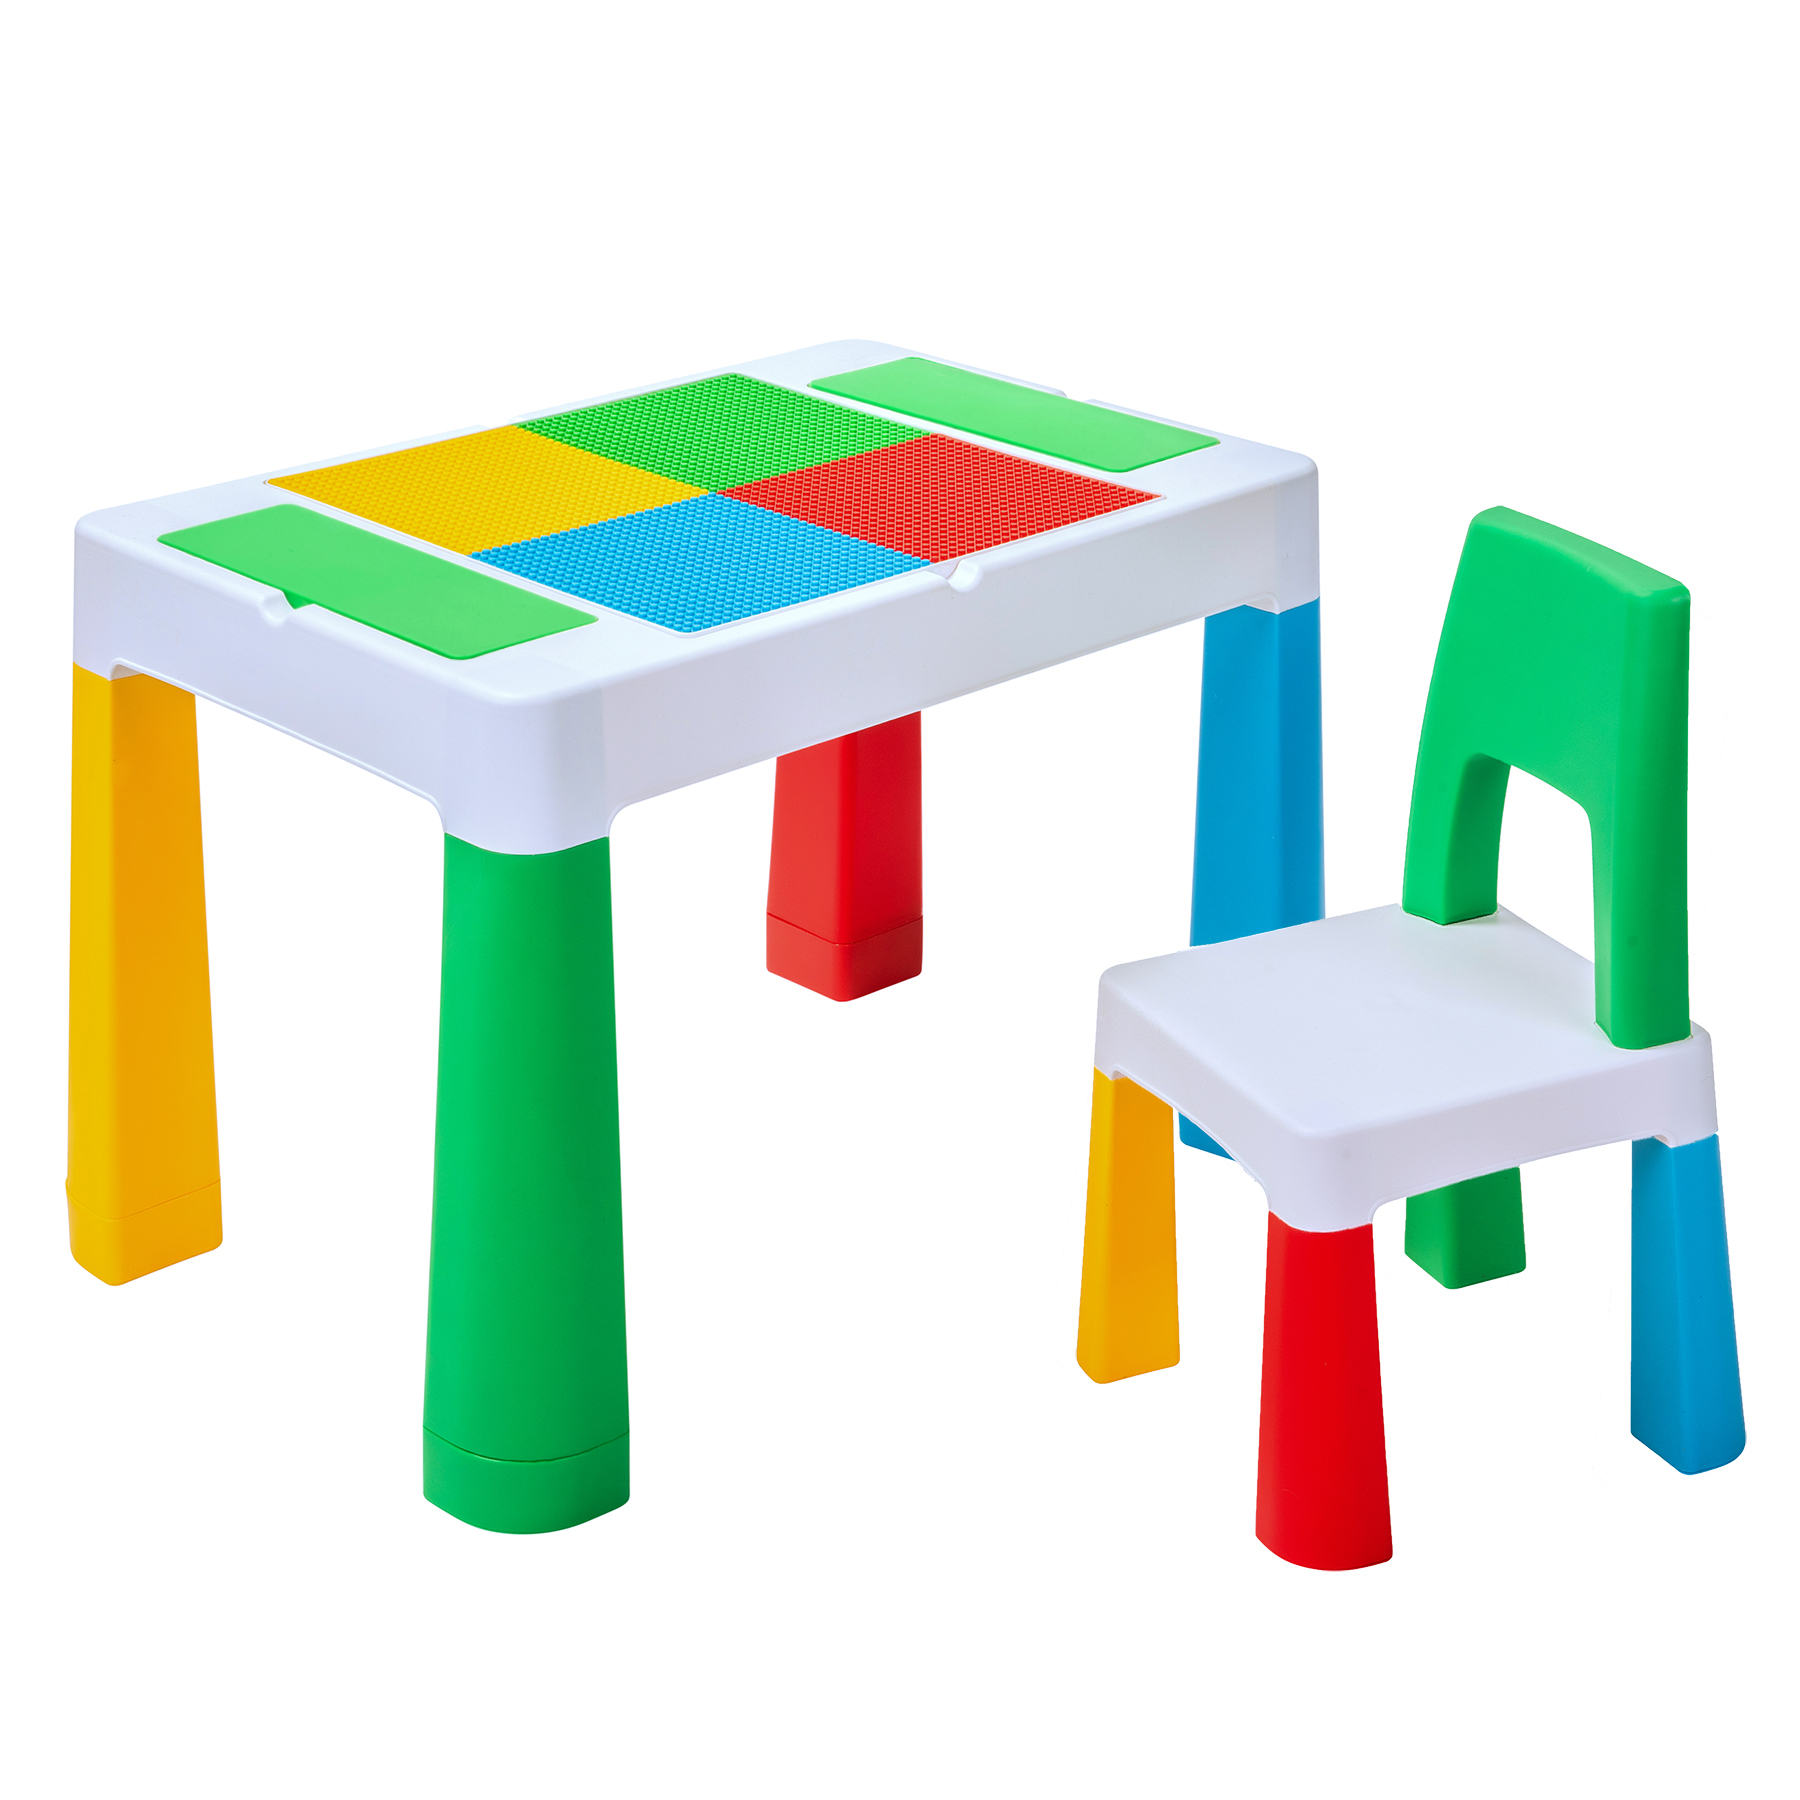 Практичная столешница-трансформер из обеденного стола легко превращается в игровую площадку или оригинальную панель для конструкторов